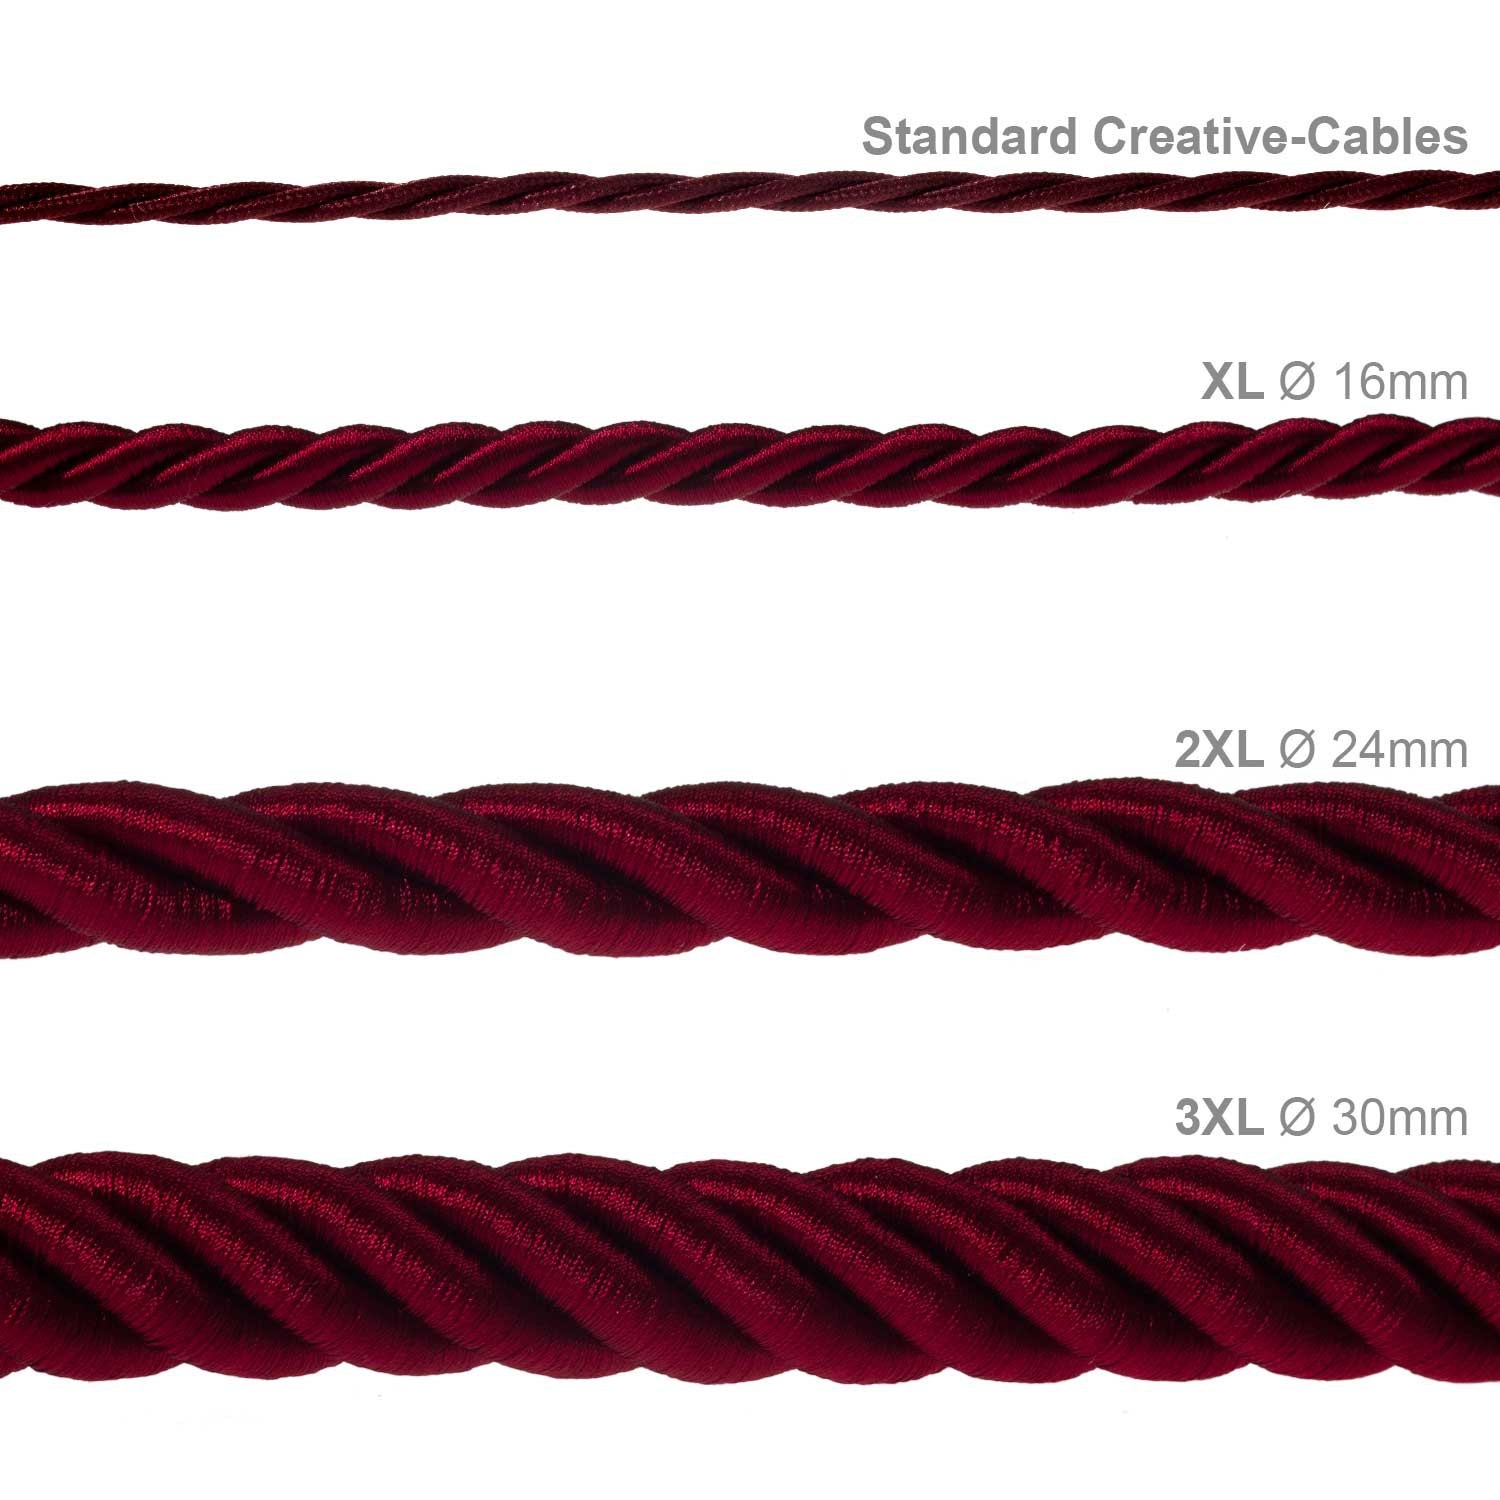 Cordón 3XL, cable eléctrico 3x0,75, recubierto en tejido bordeos oscuro brillante. Diámetro: 30mm.